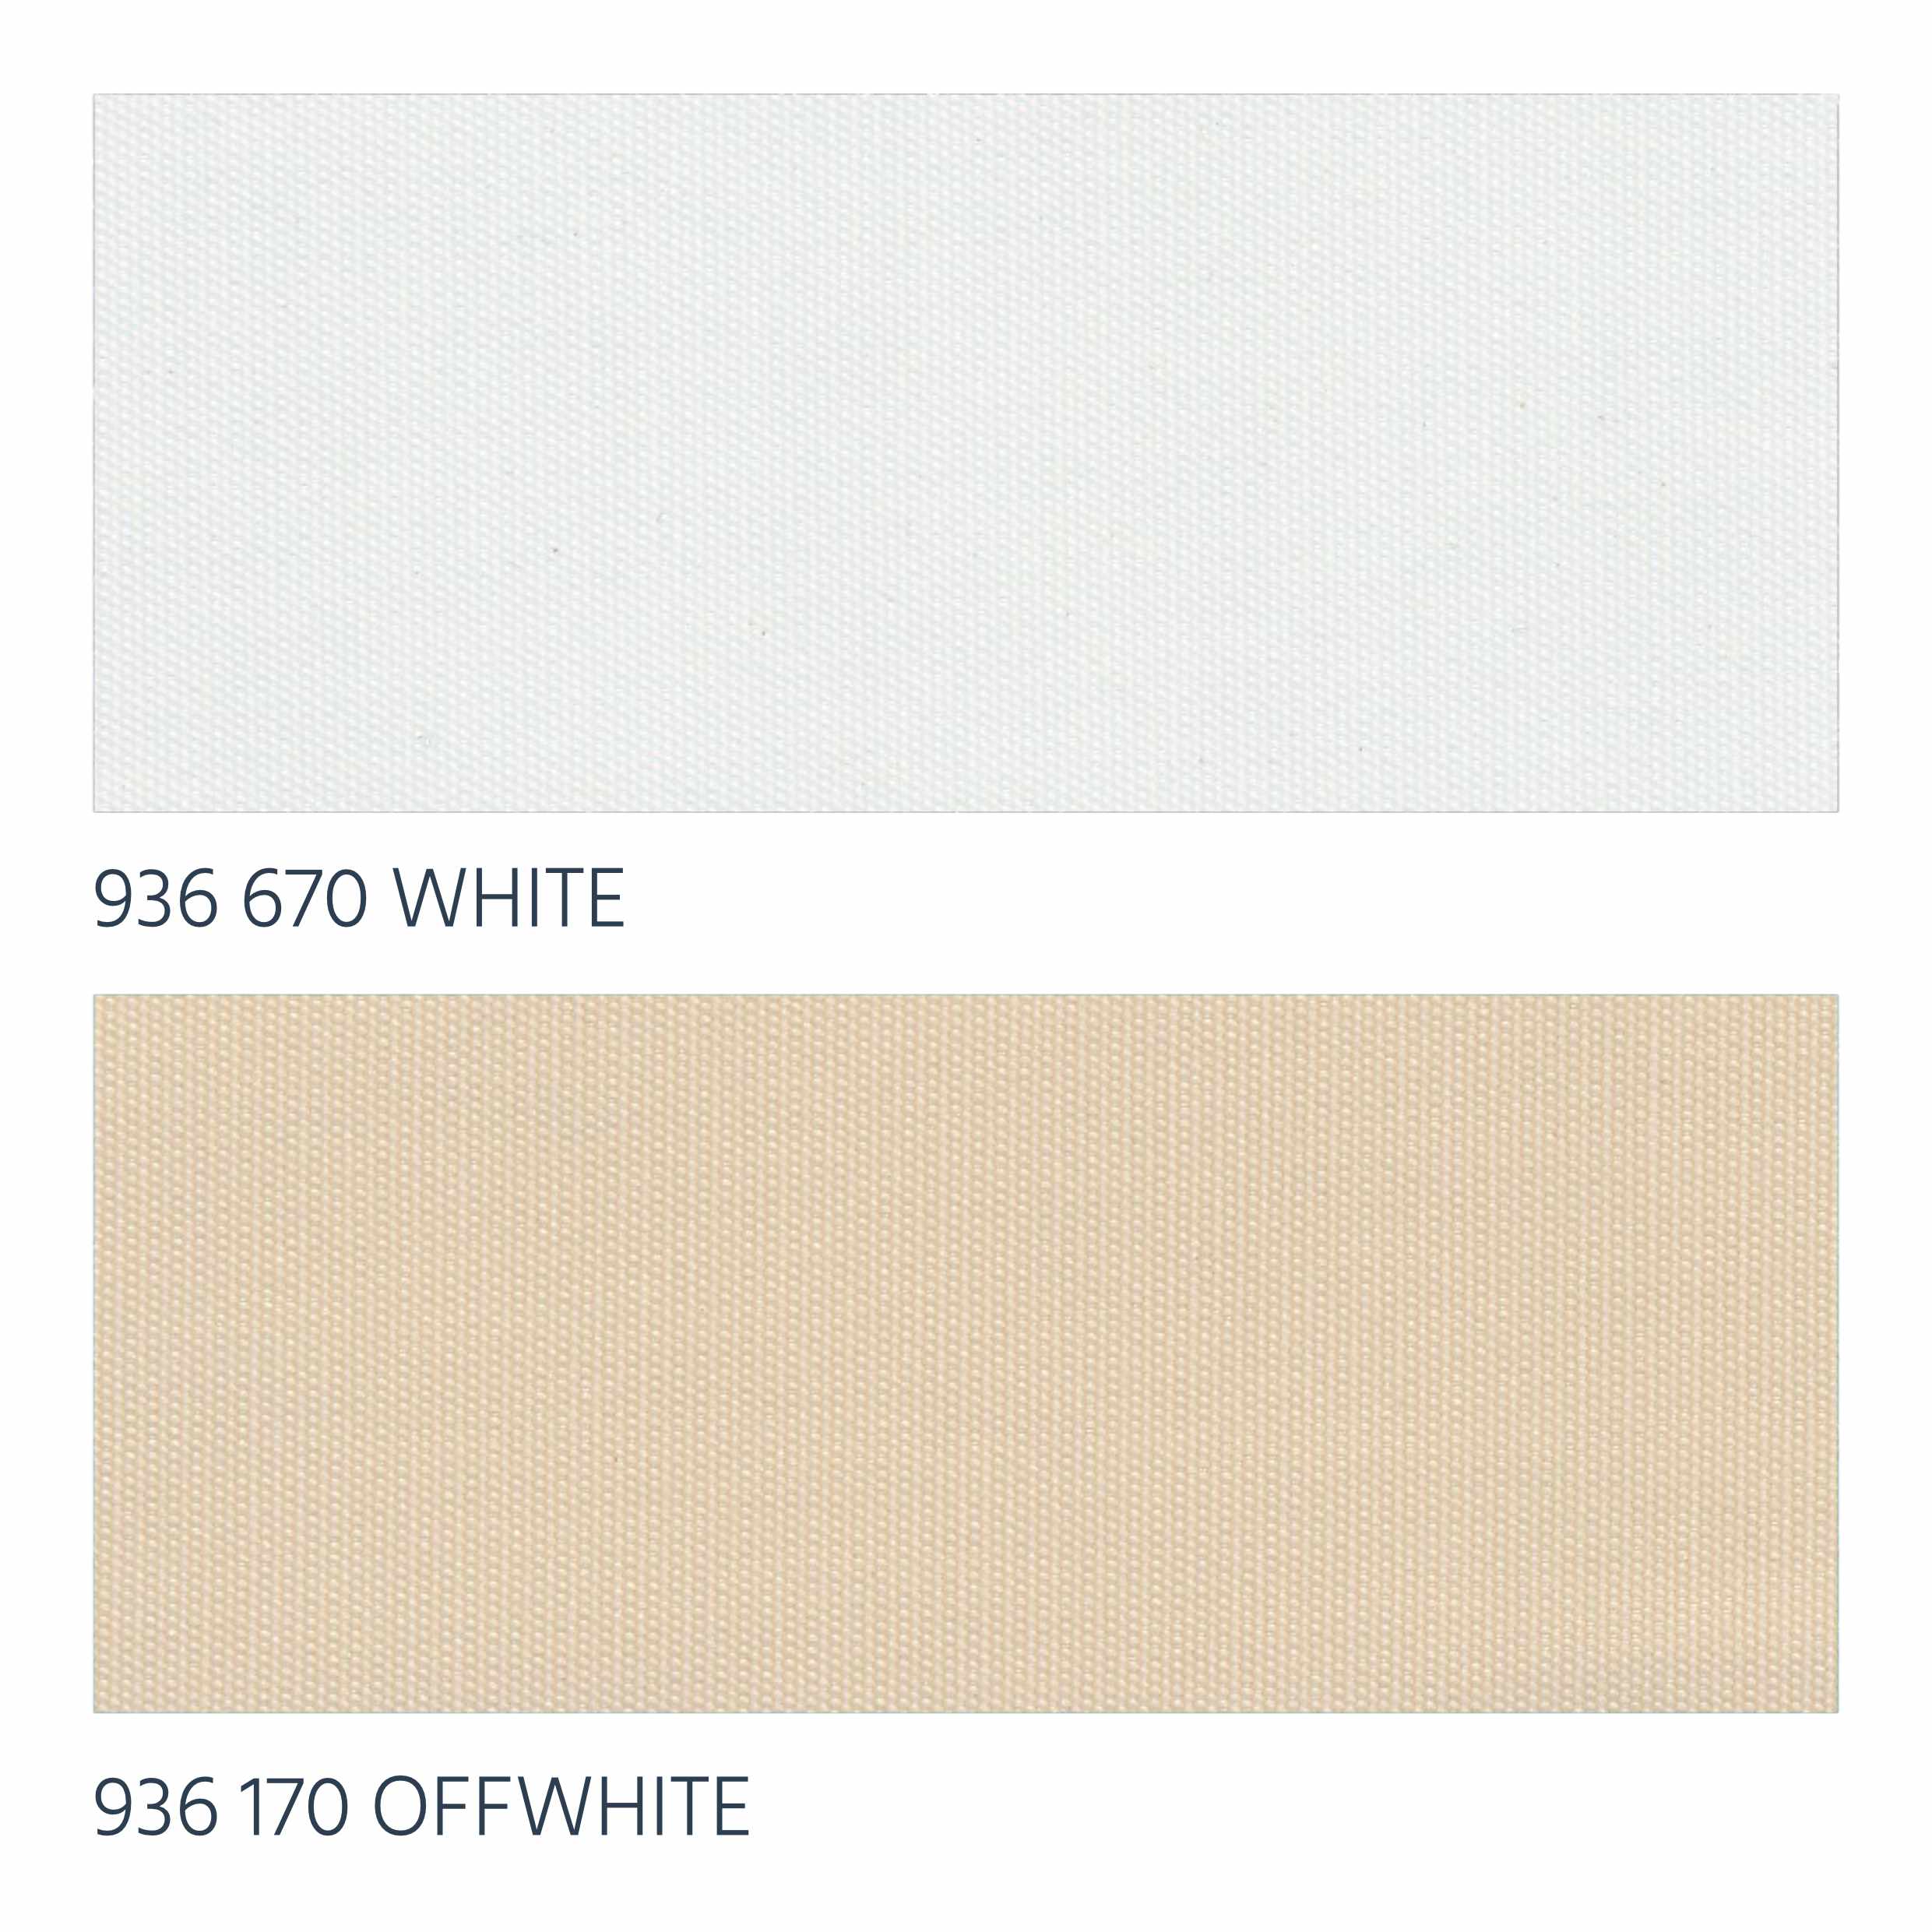 White & Offwhite